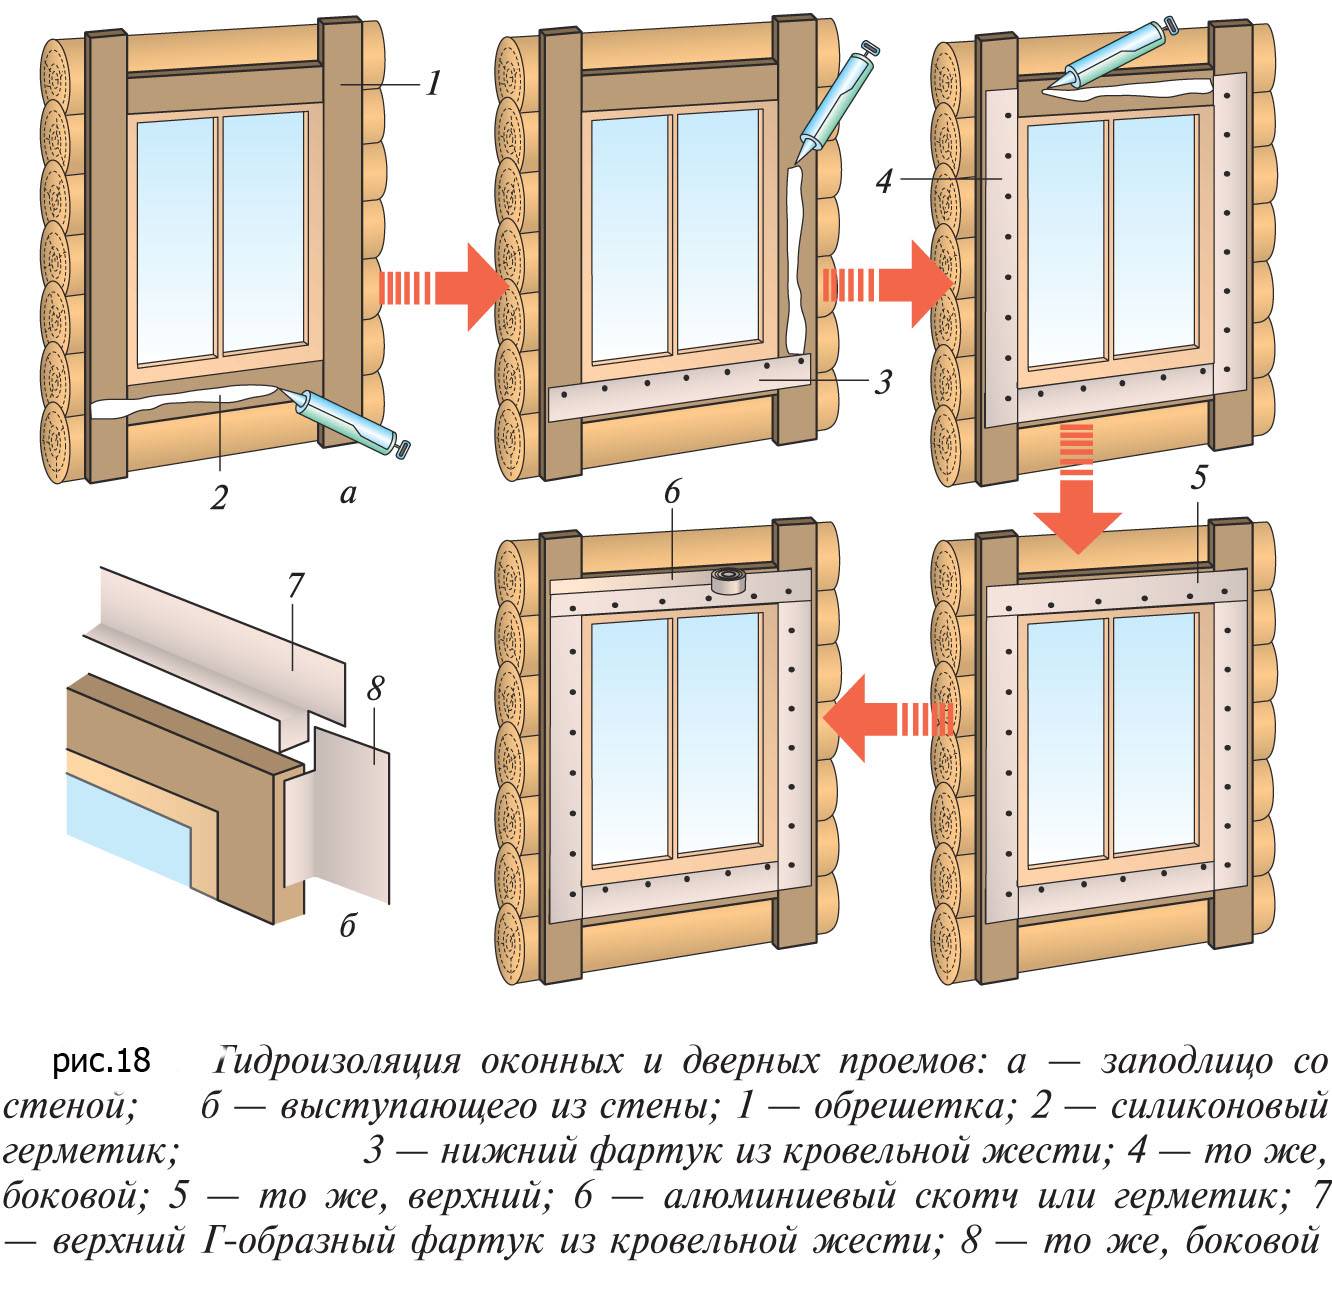 Деревянные откосы на окна - как сделать и установить, отделака окон откосами из дерева